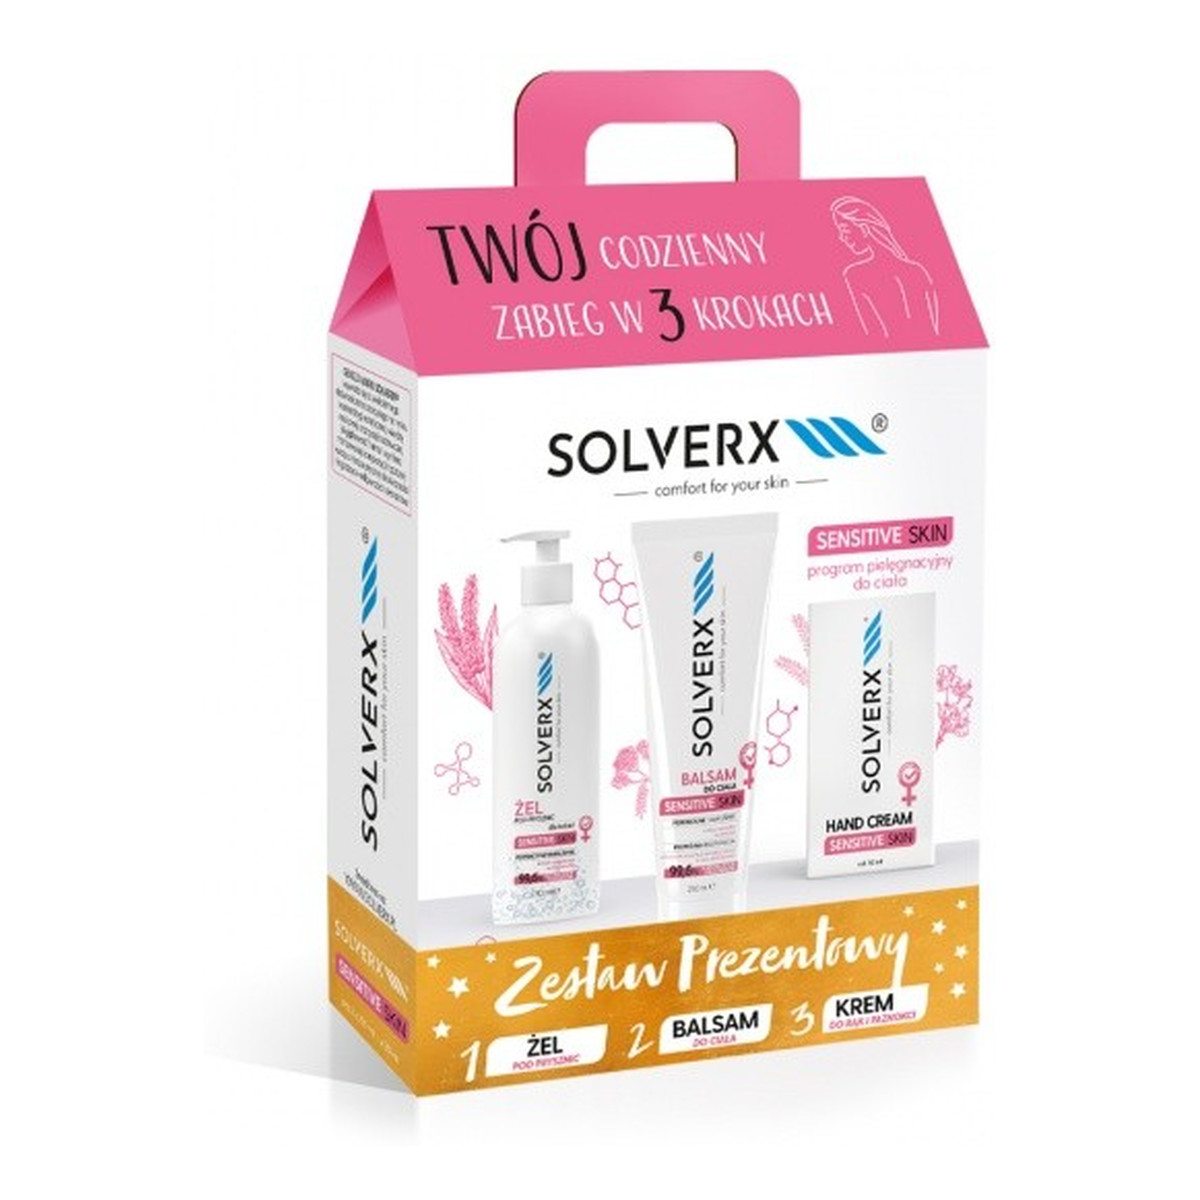 Solverx Sensitive Skin Zestaw prezentowy (balsam do ciała +krem do rąk +żel do mycia ciała ) 250ml